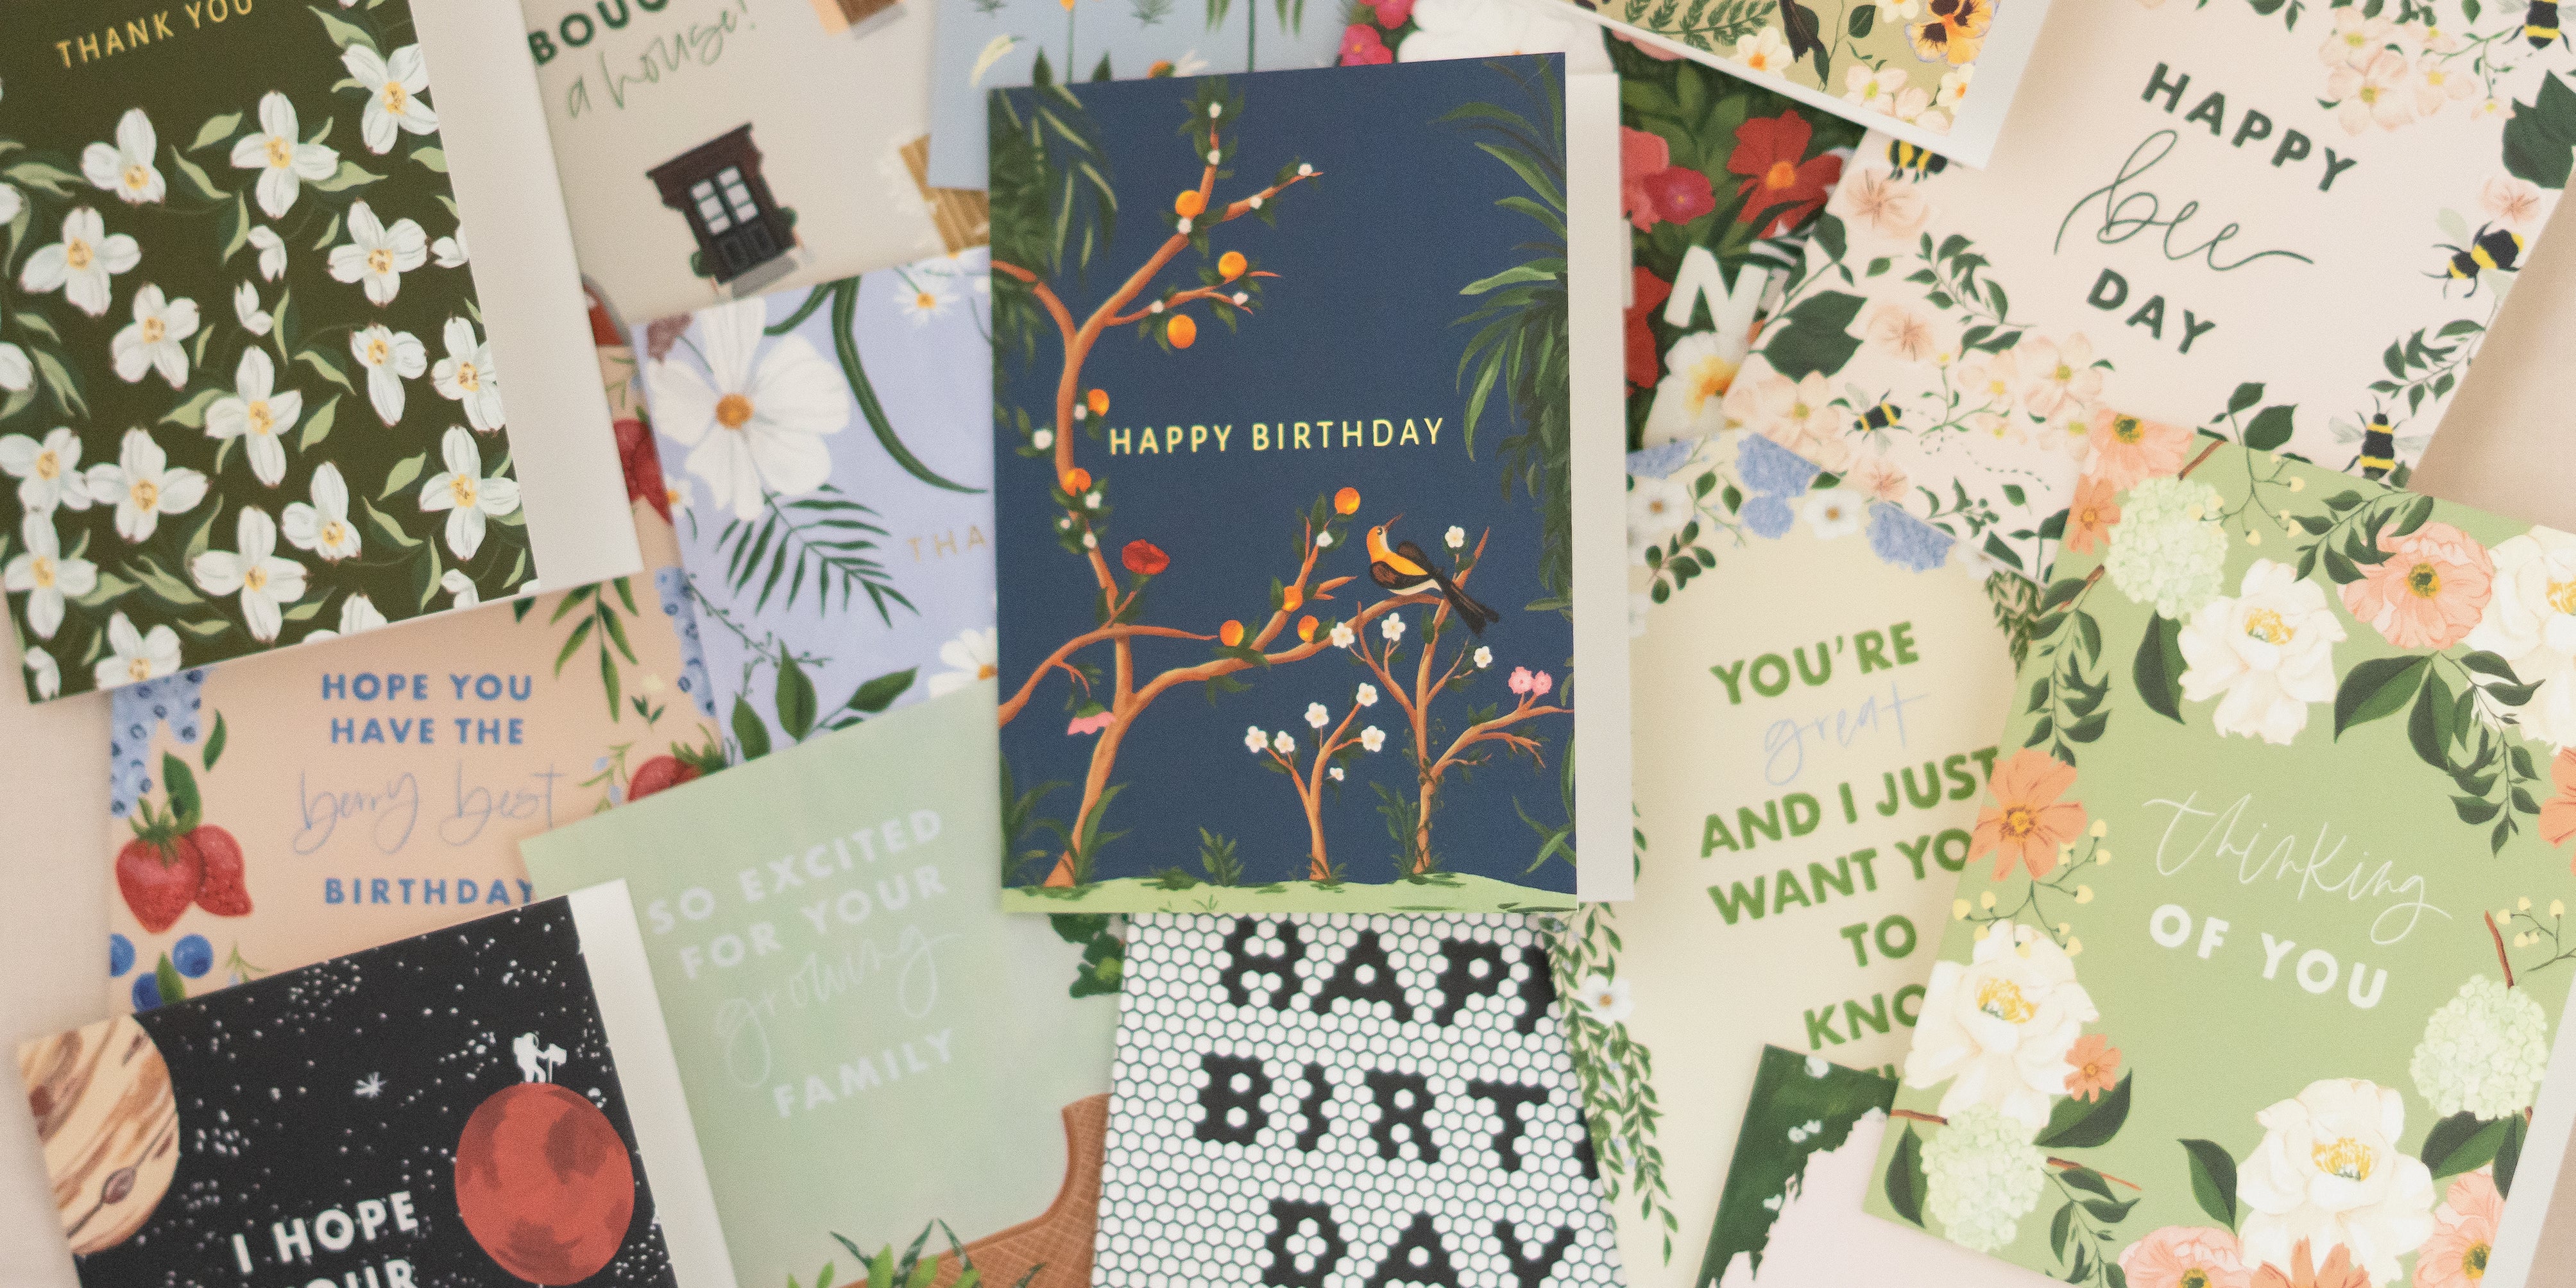 Letterpress greeting cards, Mini cards, Sarah + Maude